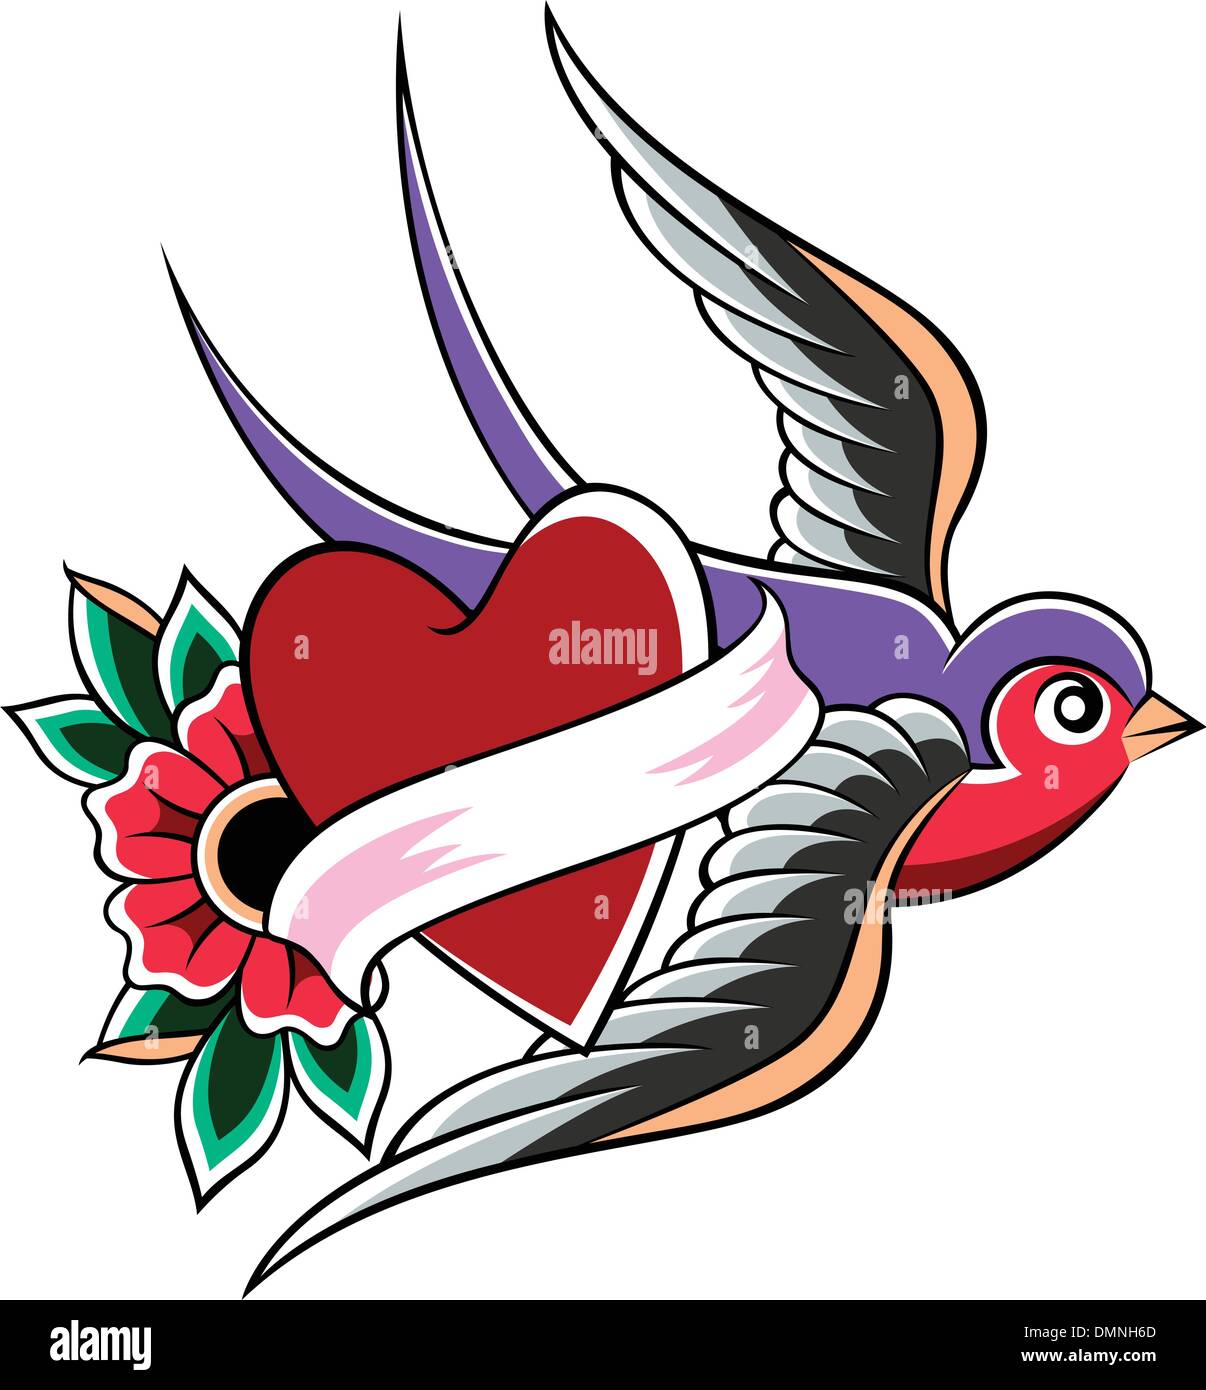 Oiseau hirondelle coeur fleur emblème Illustration de Vecteur